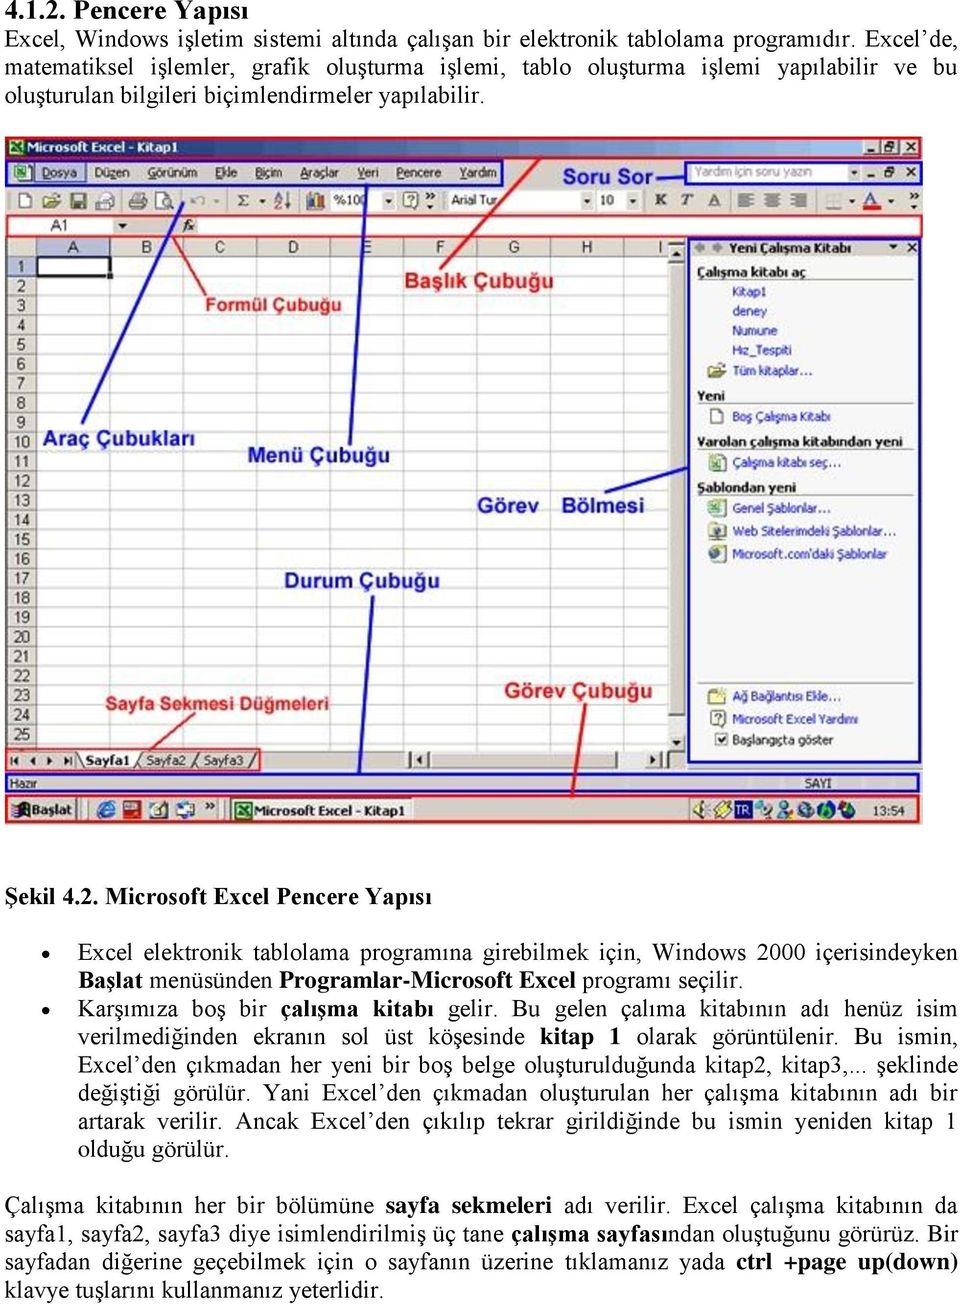 Microsoft Excel Pencere Yapısı Excel elektronik tablolama programına girebilmek için, Windows 2000 içerisindeyken Başlat menüsünden Programlar-Microsoft Excel programı seçilir.